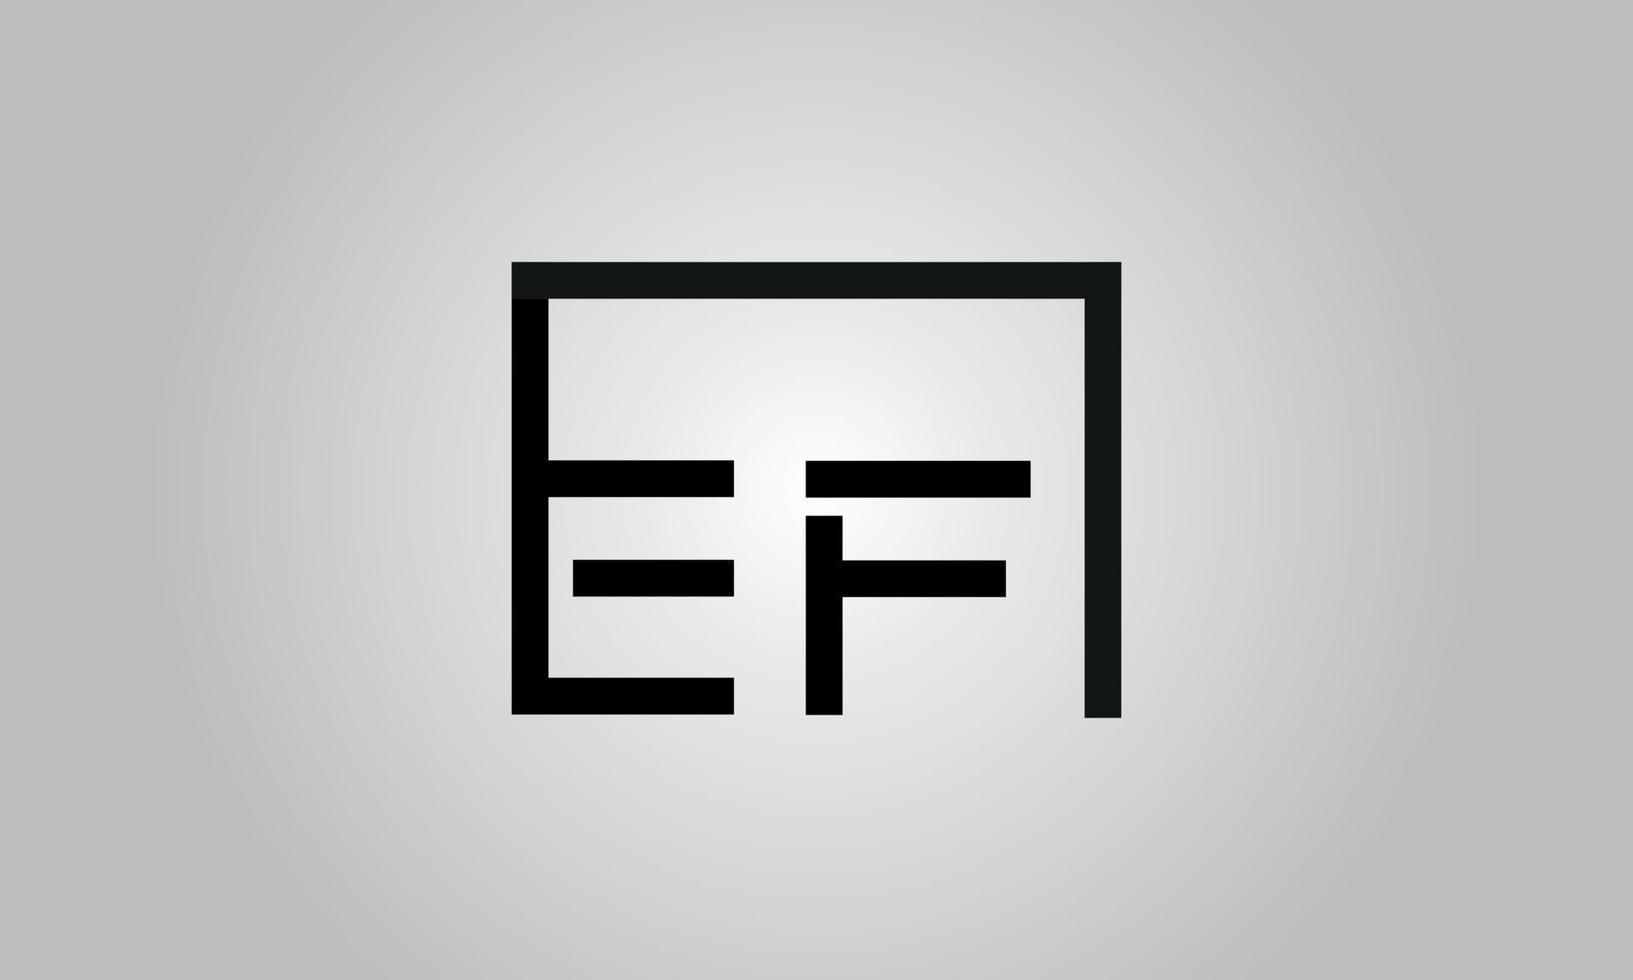 design de logotipo letra ef. ef logotipo com forma quadrada em cores pretas modelo de vetor livre.